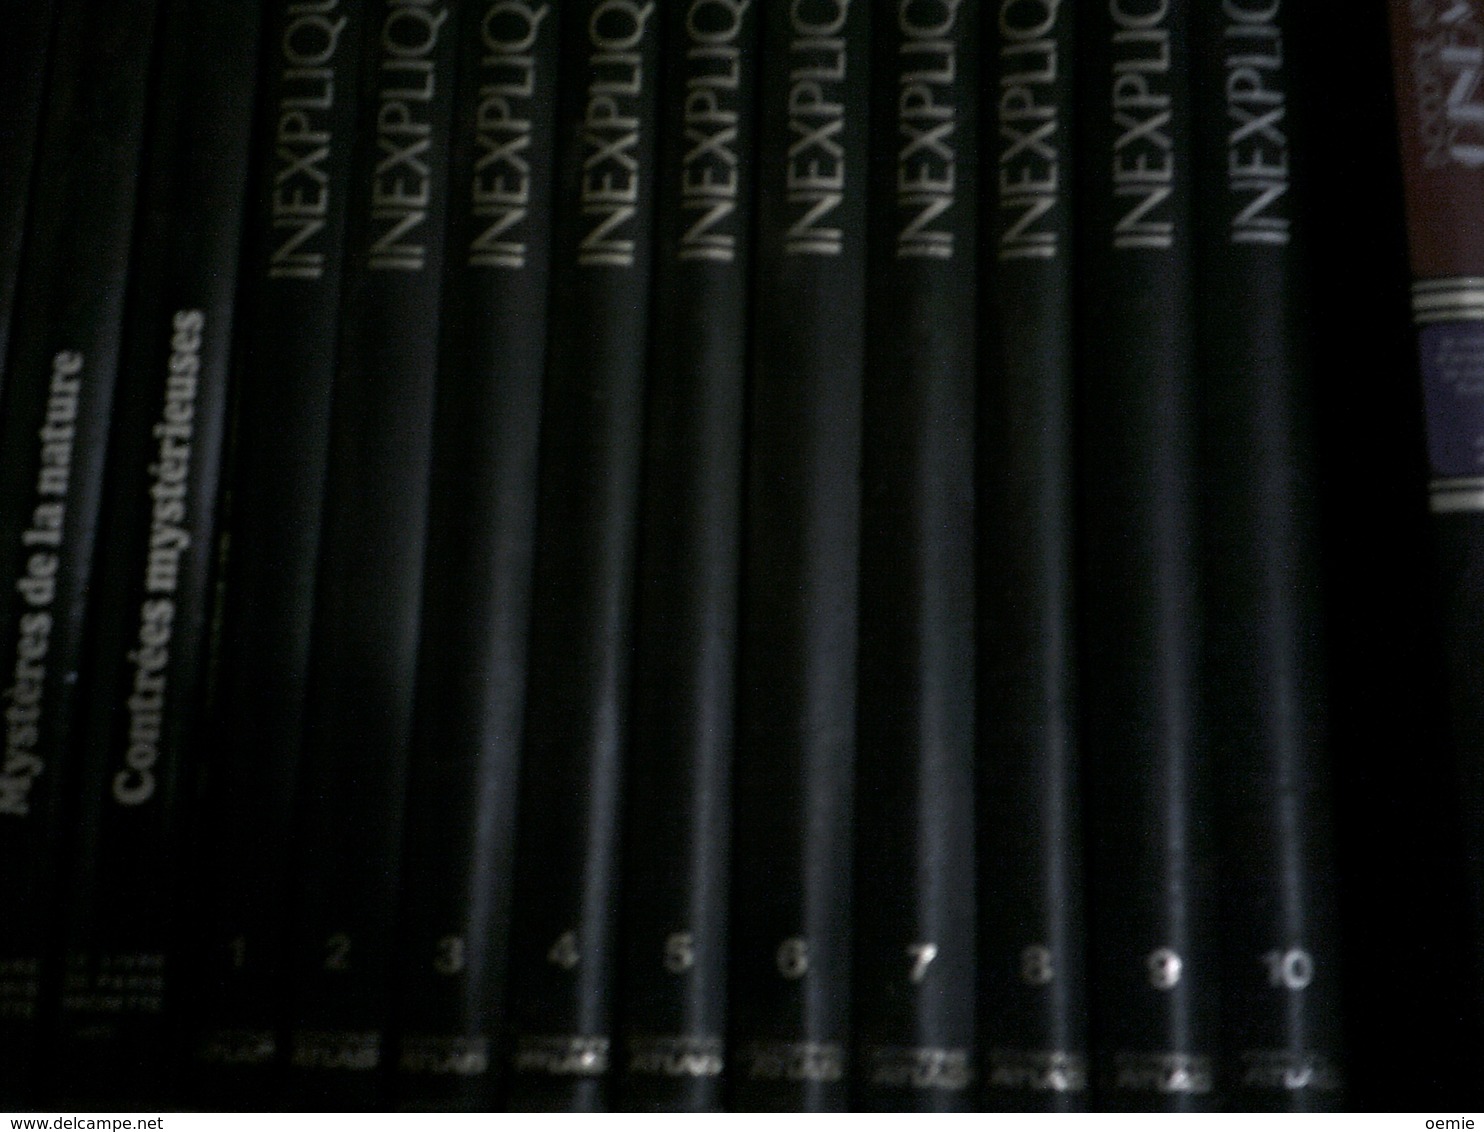 INEXPLIQUE  10 VOLUMES EDITION ATLAS - Encyclopédies